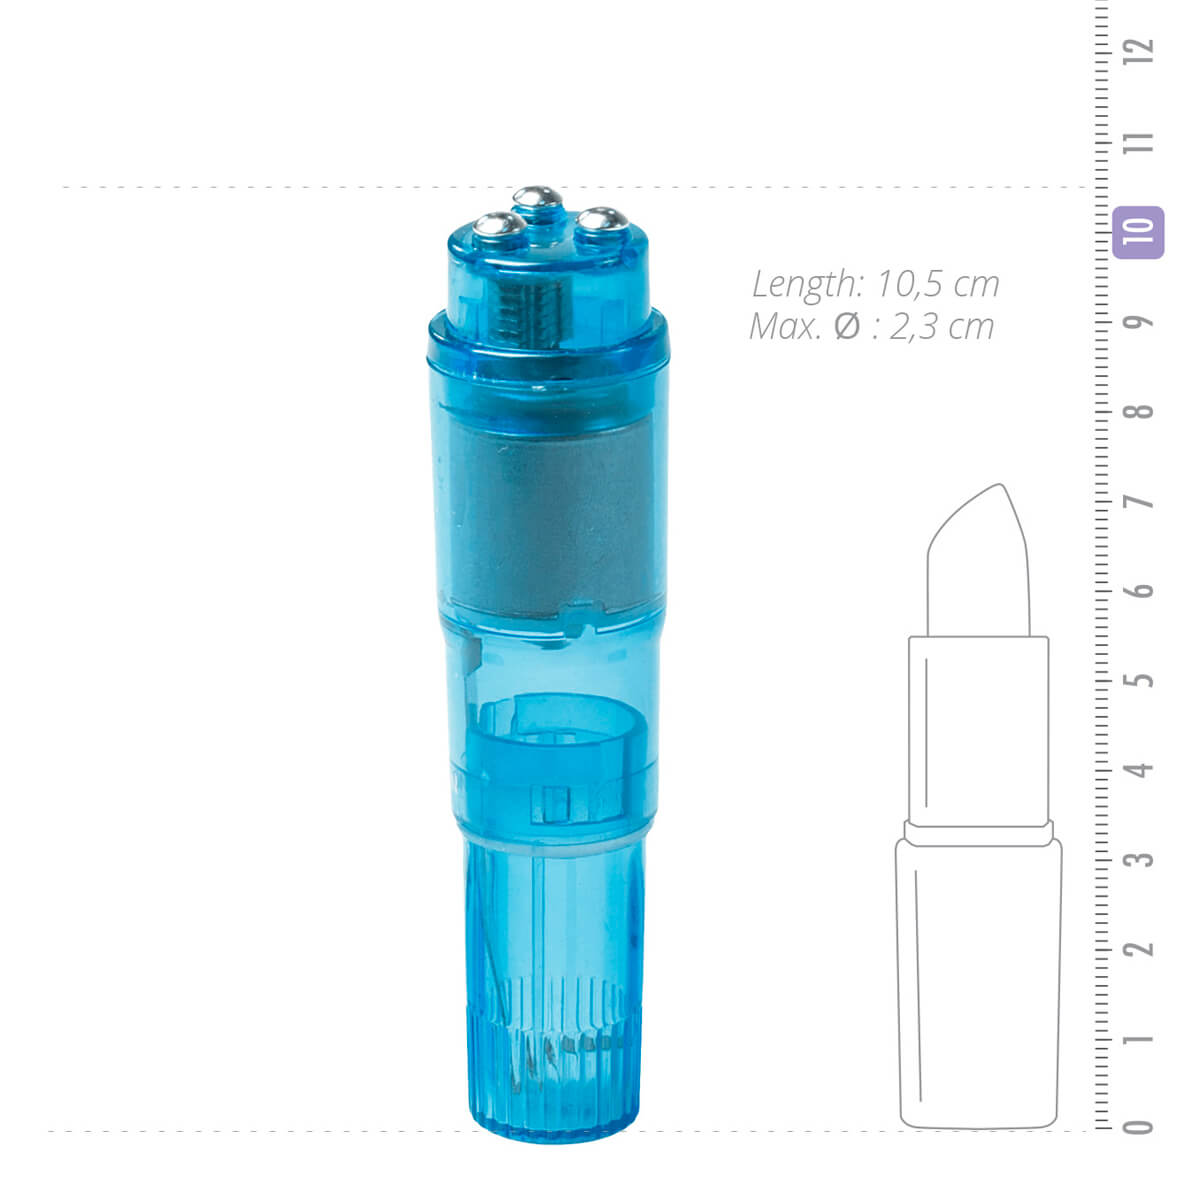 Easytoys Pocket Rocket - vibrátoros szett - kék (5 részes) Mini vibrátor (rezgő) kép